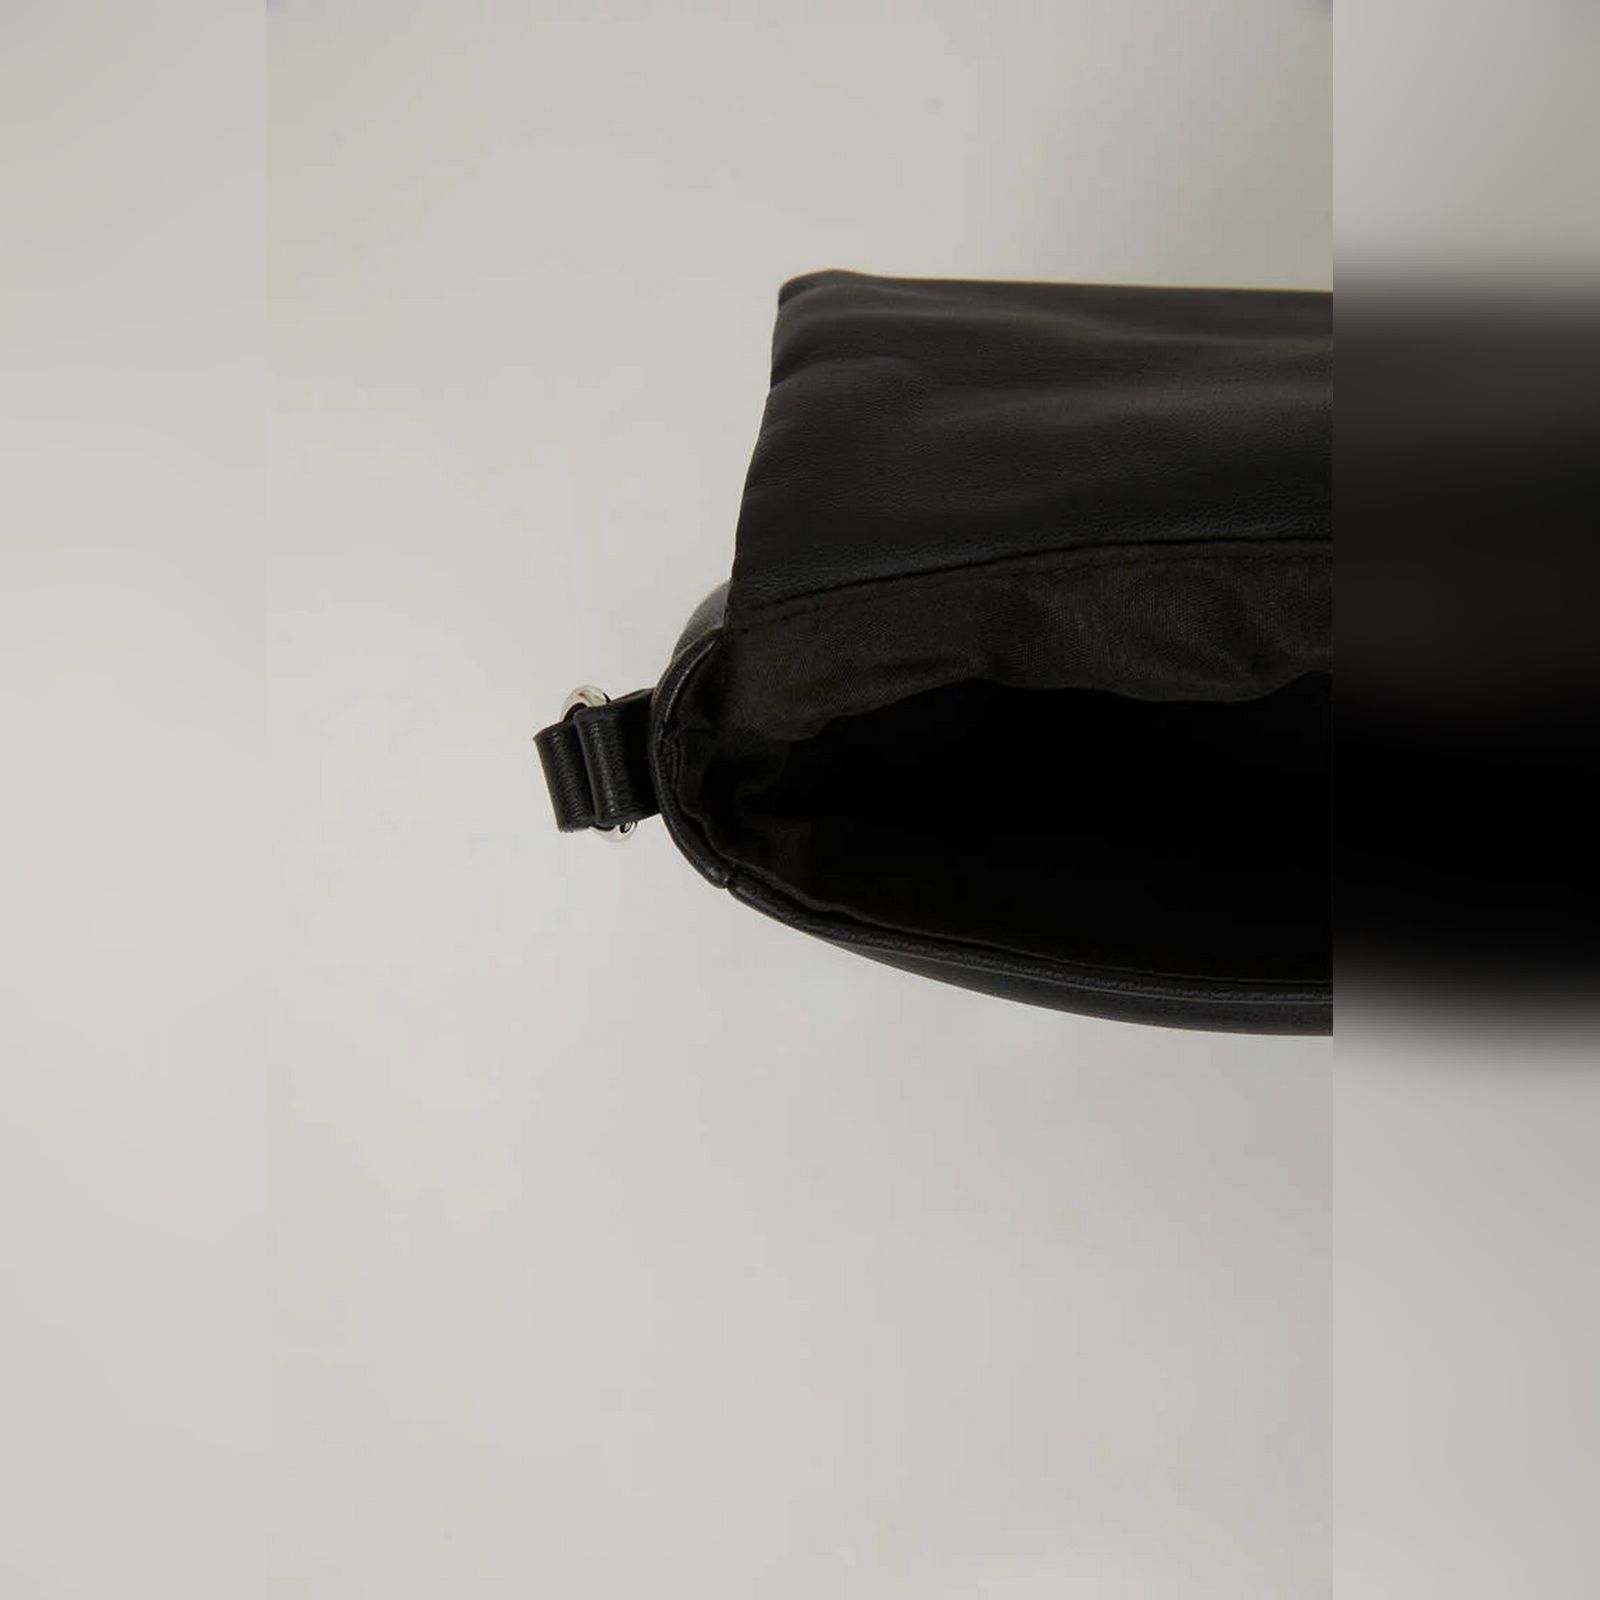 کیف دوشی زنانه دفکتو مدل kf94 -  - 10